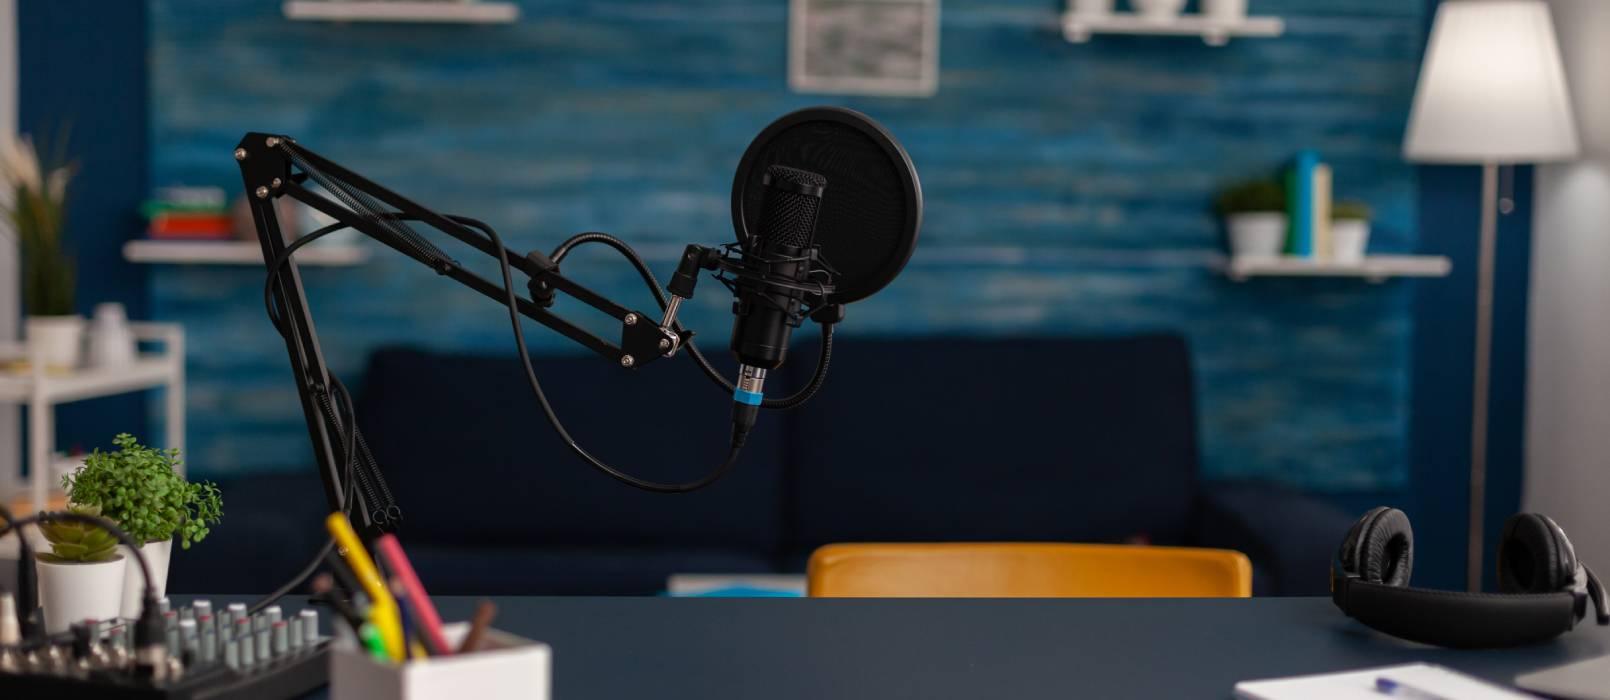 Czym są podcasty i gdzie ich słuchać? - definicja podcastingu